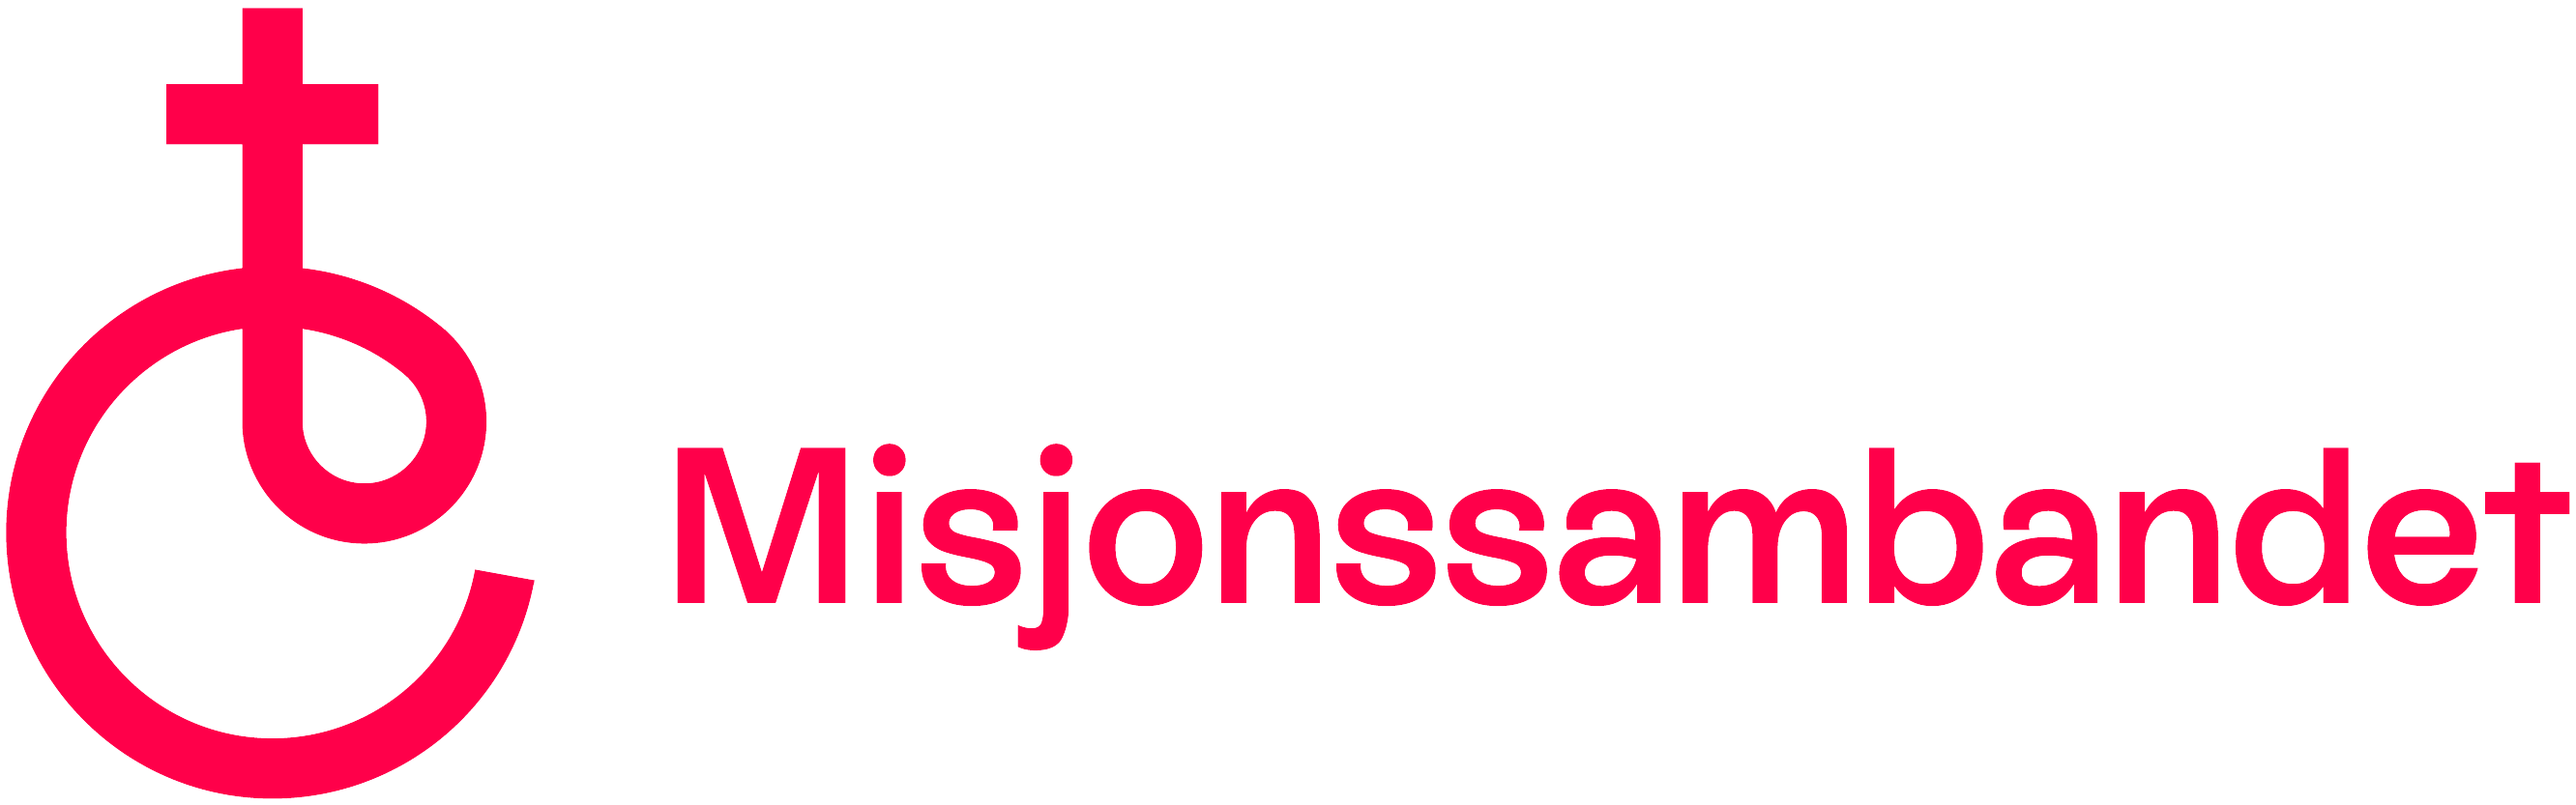 logo_Misjonssambandet_rød, beskåret